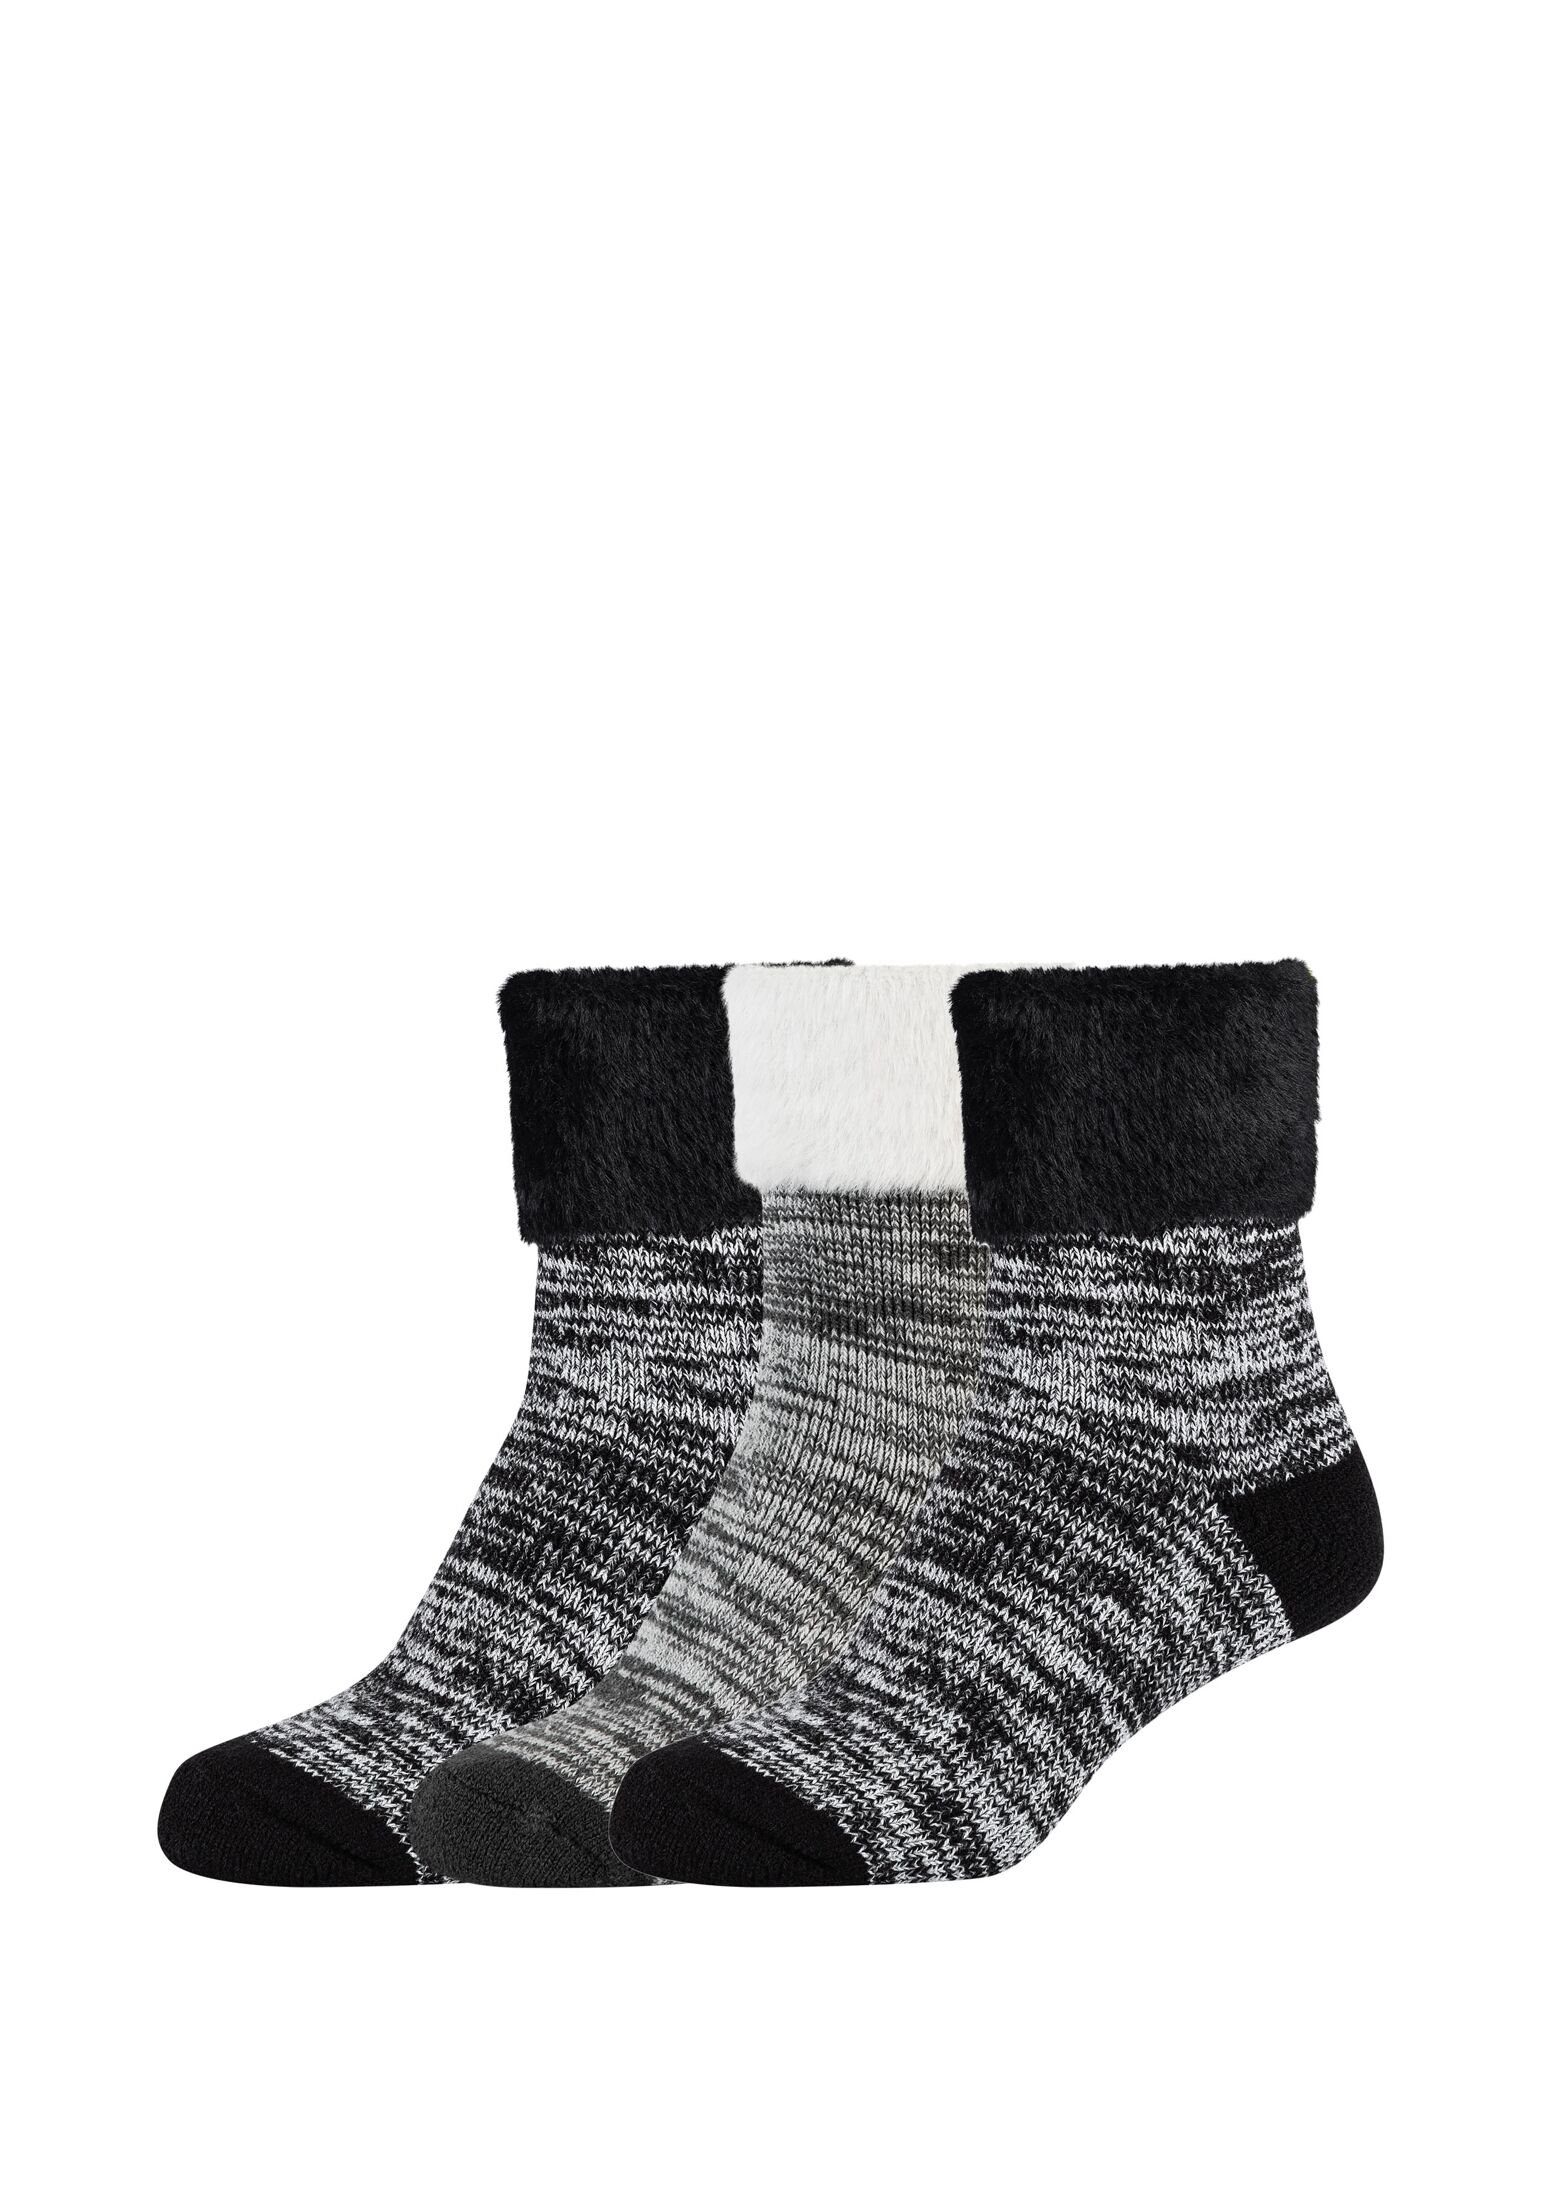 Camano Socken Socken Pack black 3er